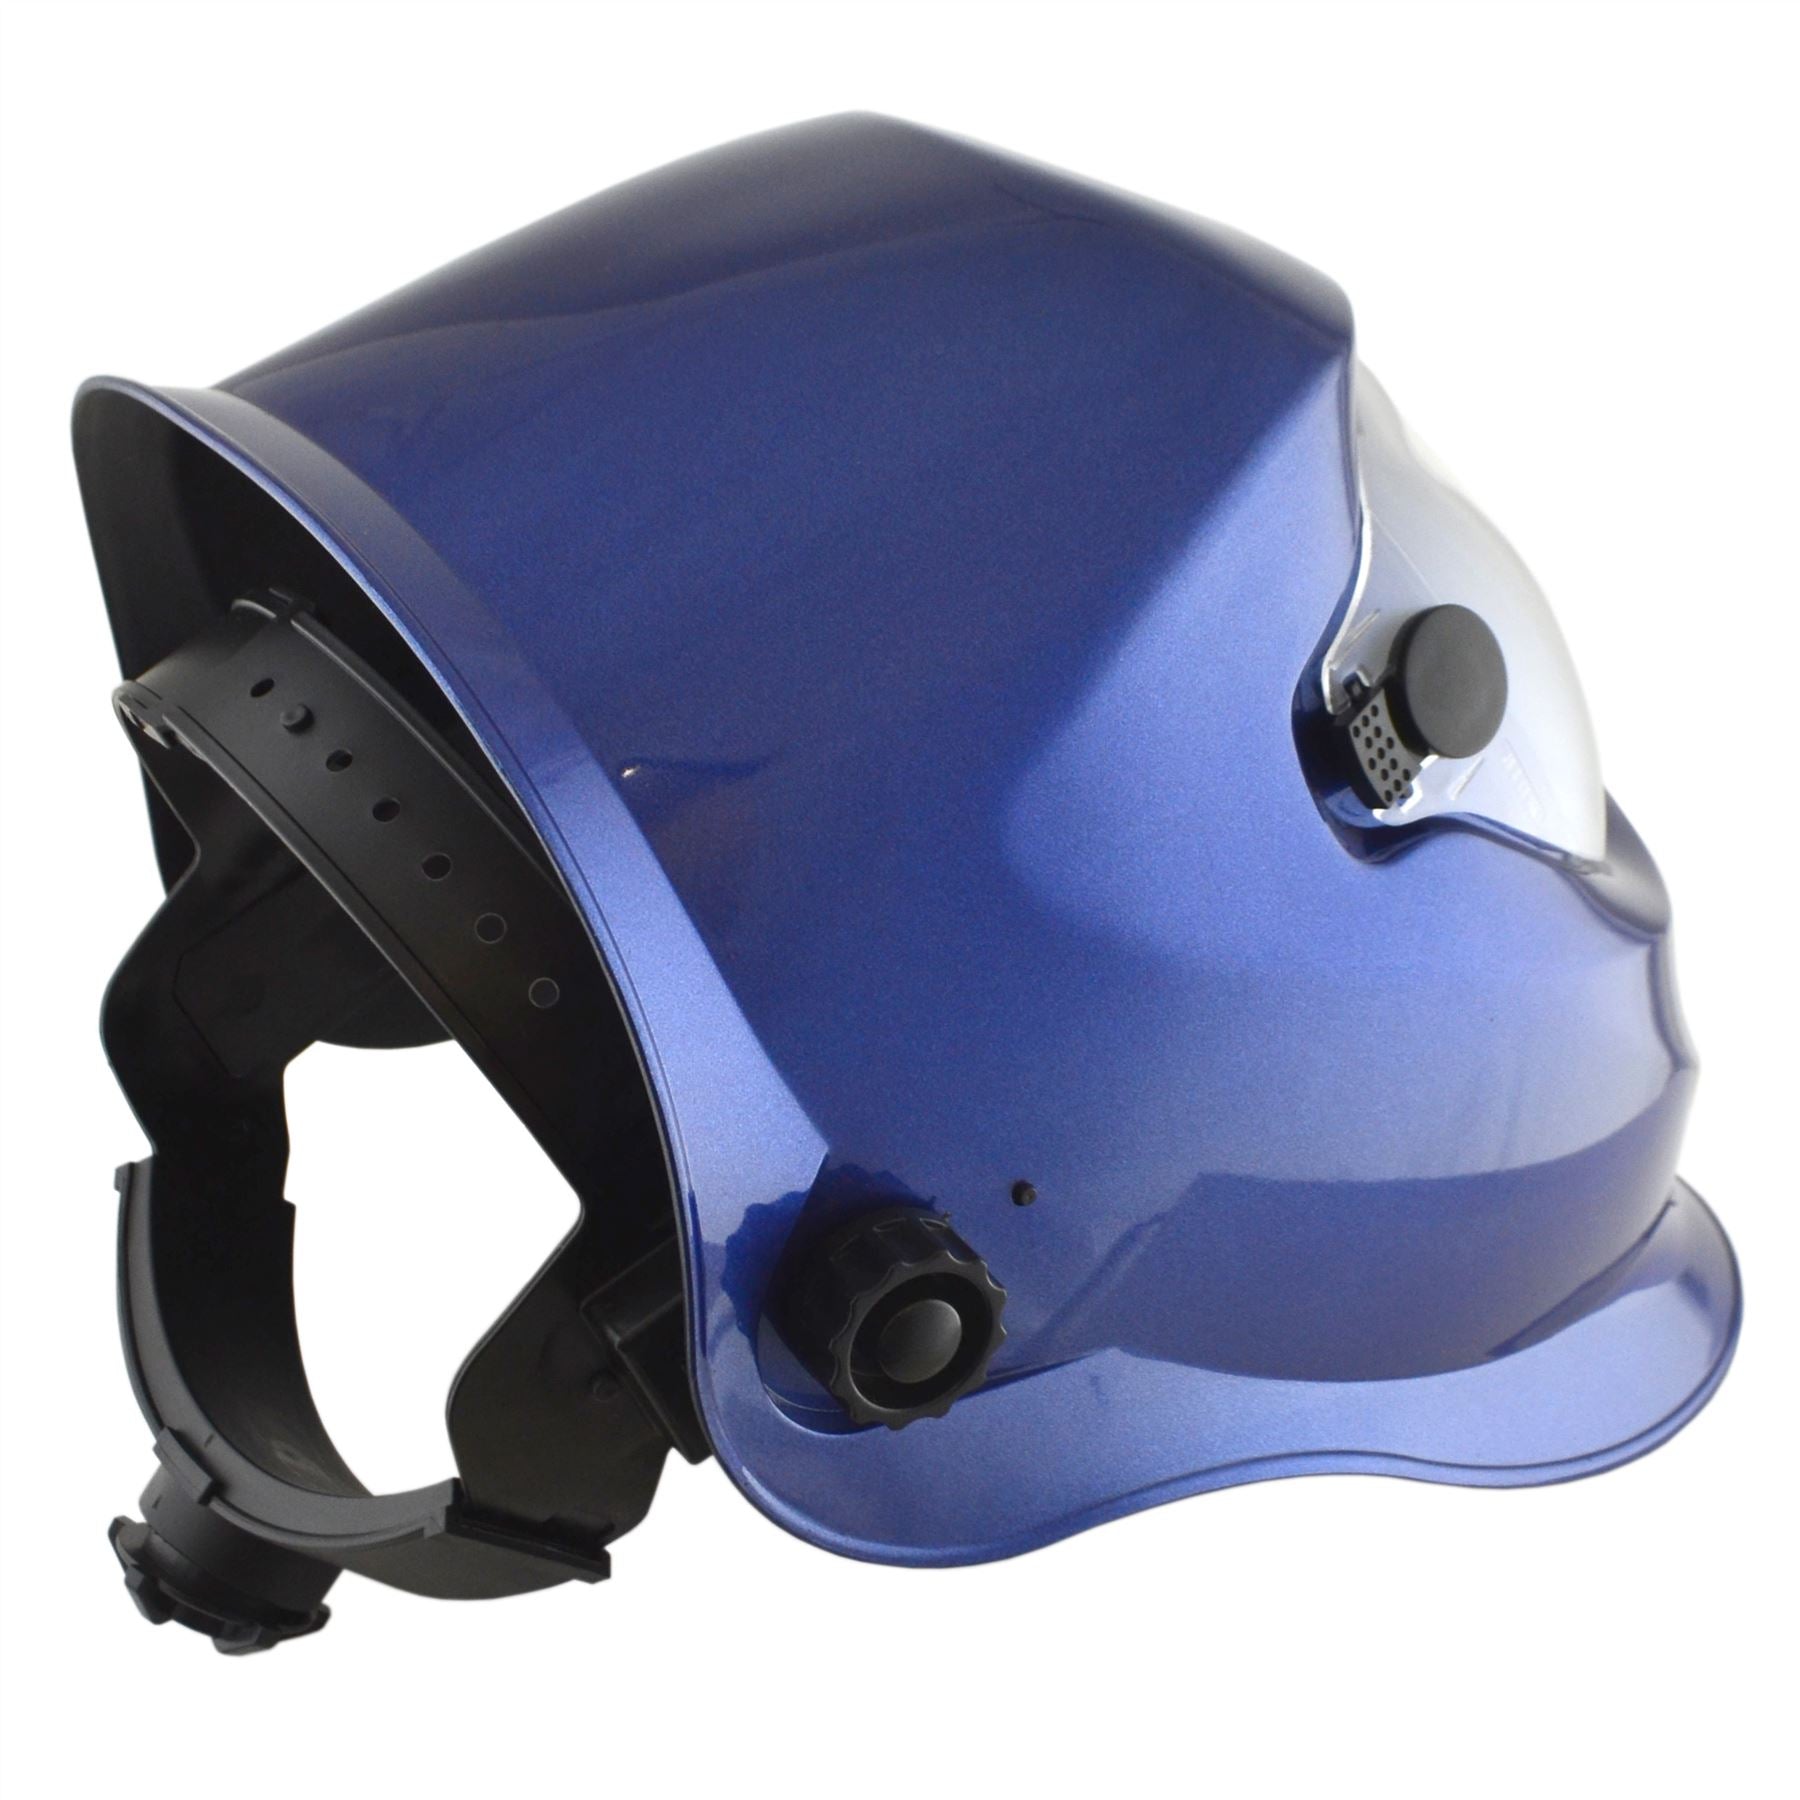 Auto Darkening Welders Helmet Mask Welding Grinding Blue & 1 x Lens Cover